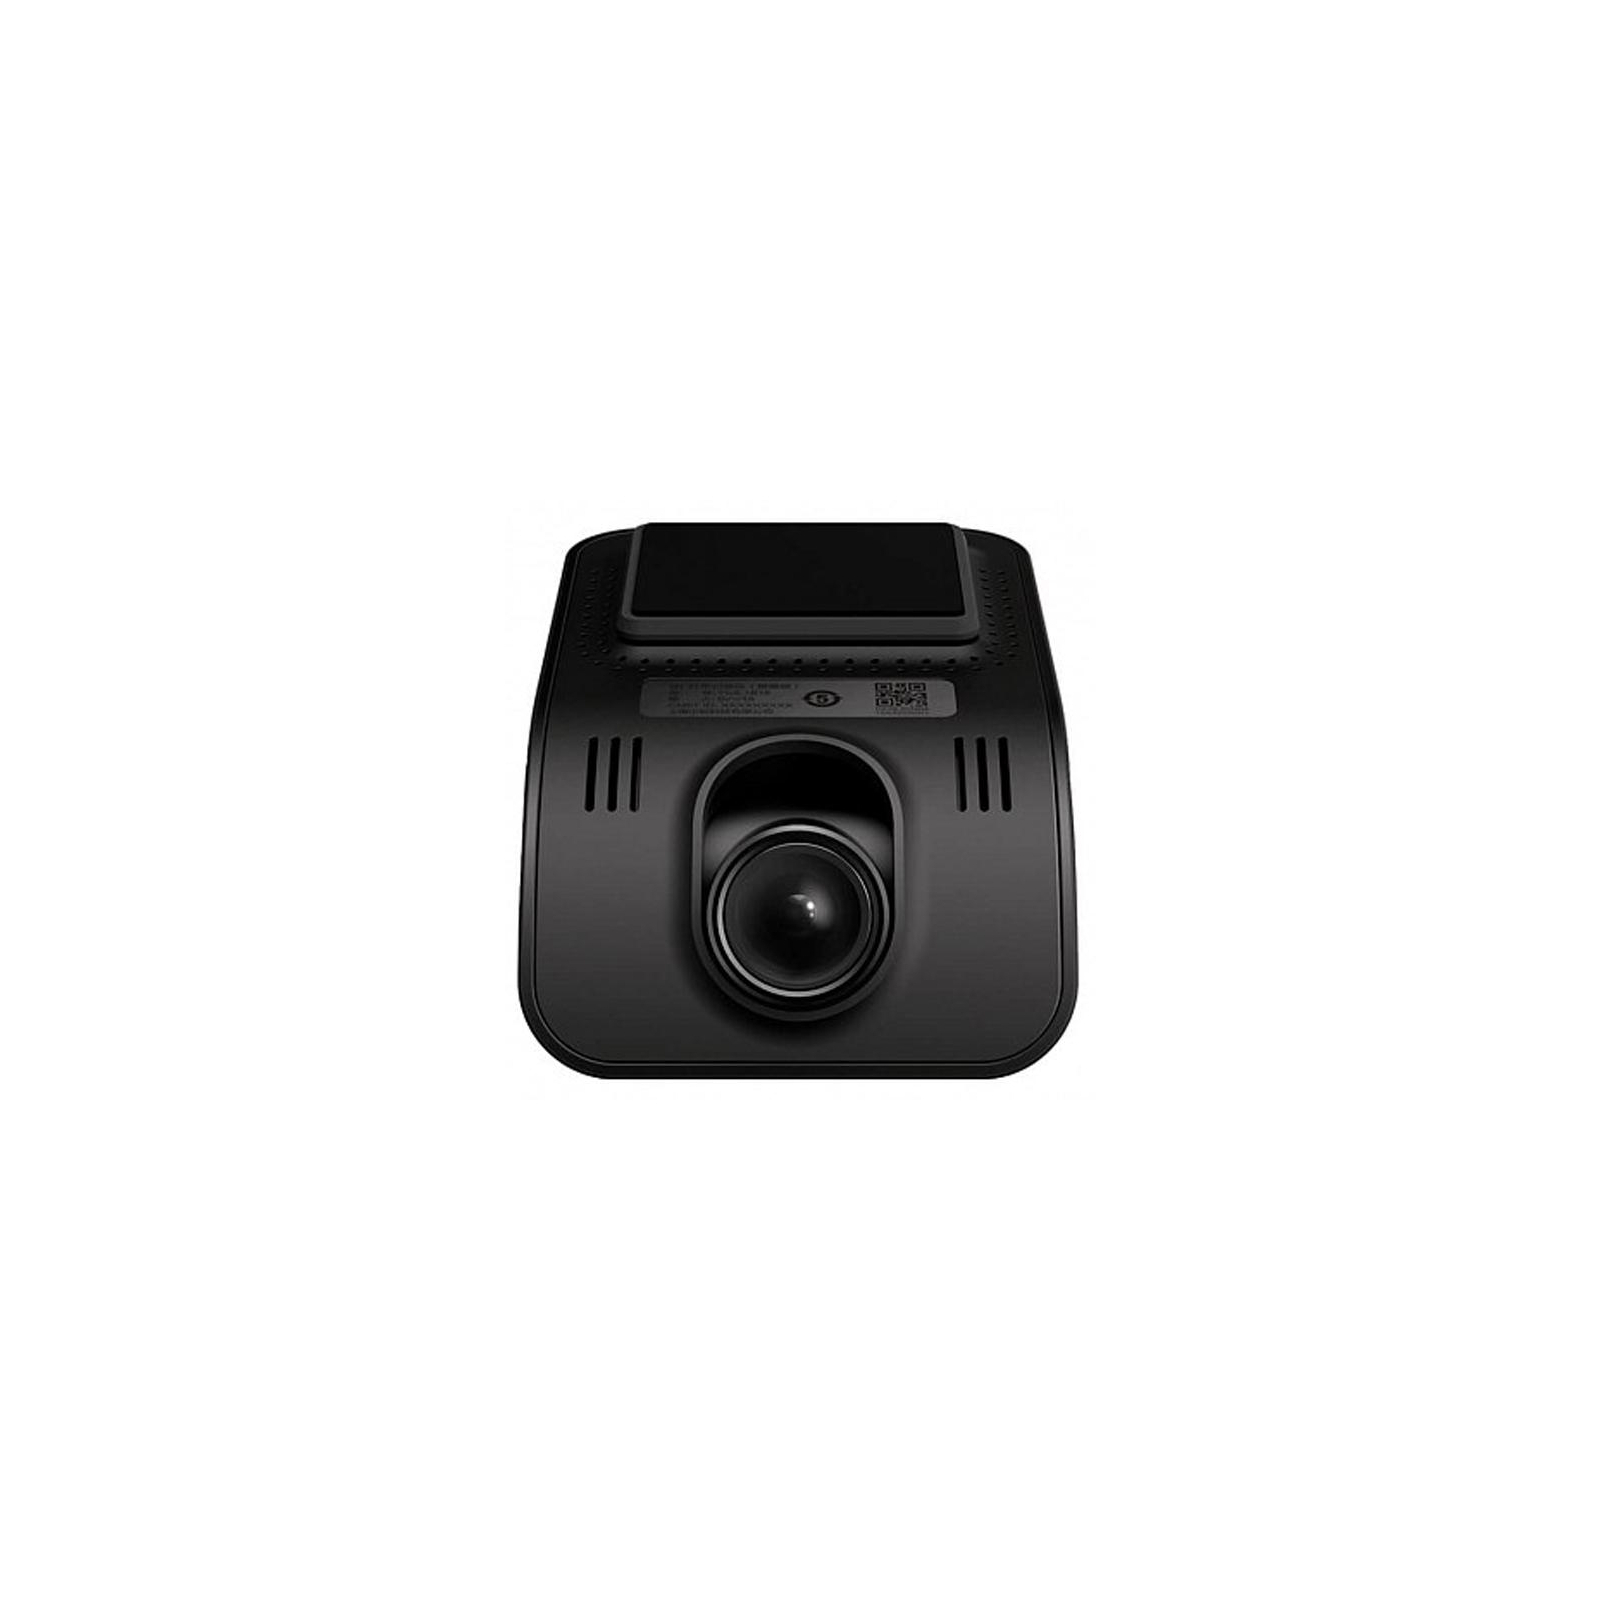 Видеорегистратор Xiaomi YI Mini Smart Dash Camera (YCS1B18) изображение 2